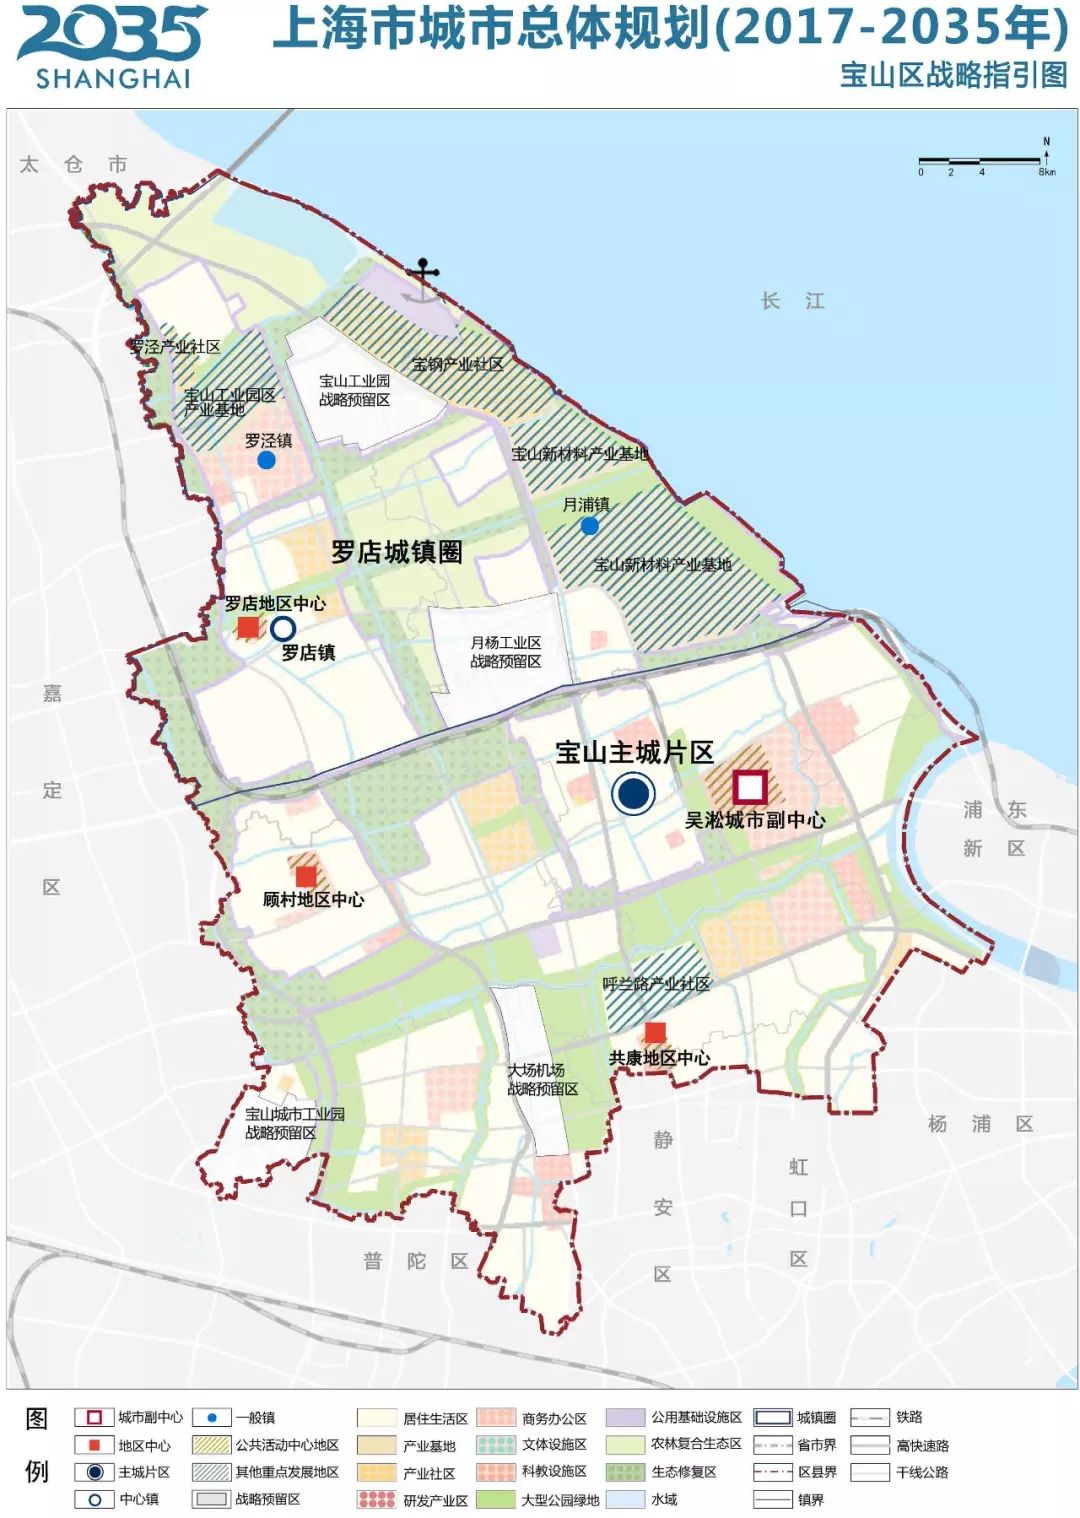 市政府常务会议上,审议通过《宝山区总体规划暨土地利用总体规划(2017